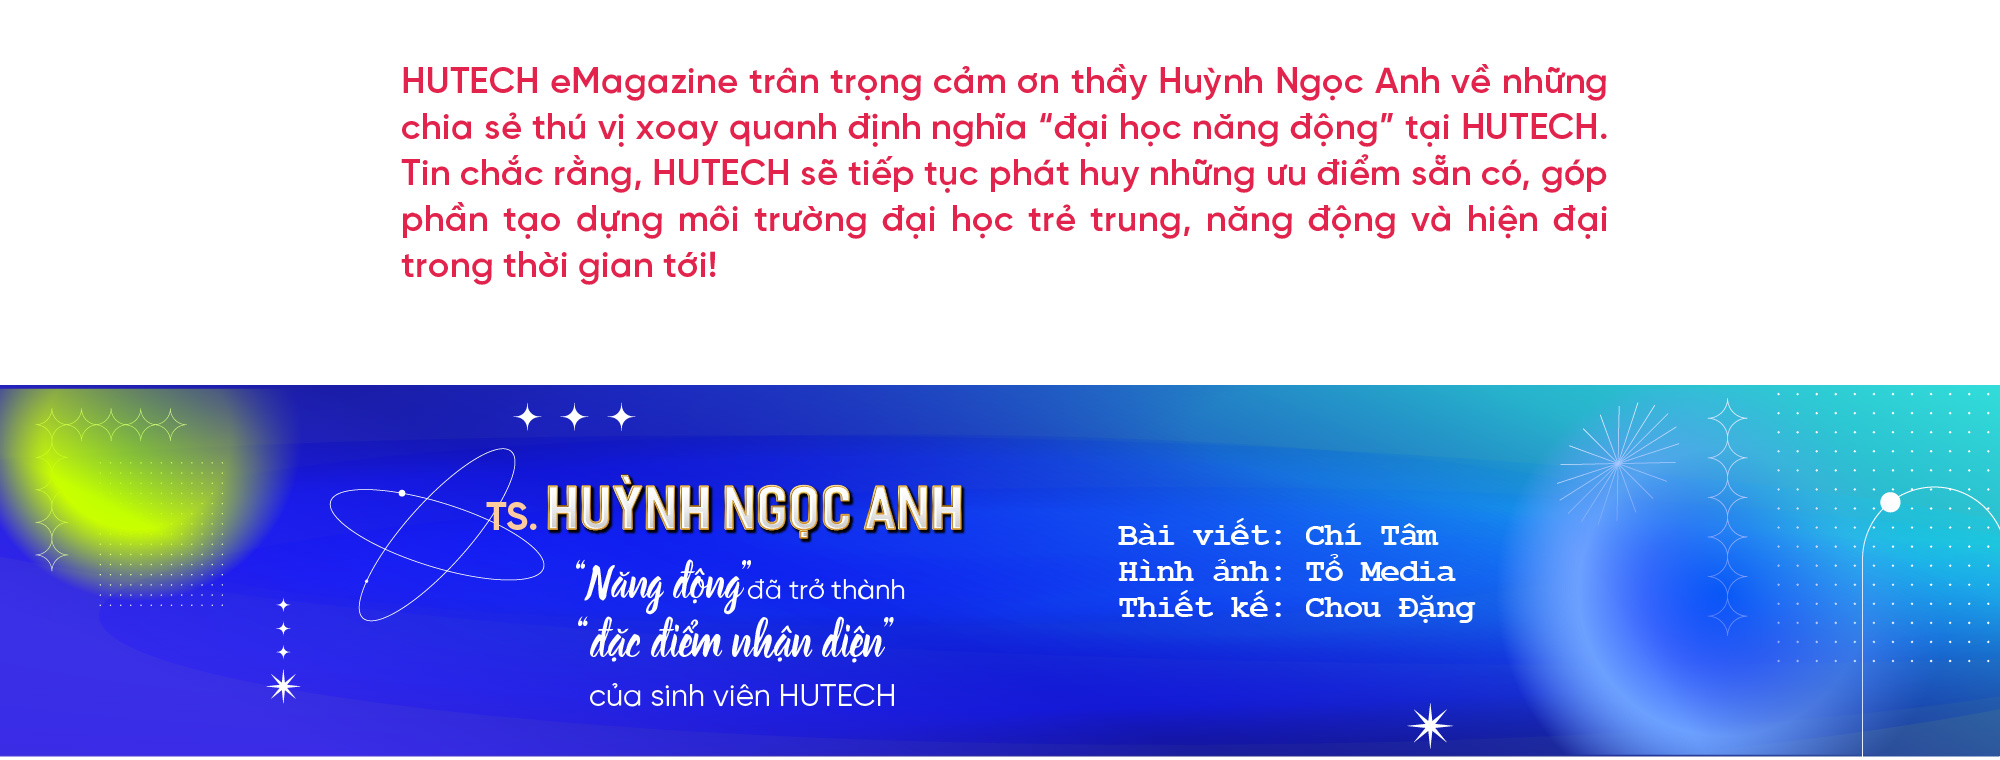 TS. Huỳnh Ngọc Anh: “Năng động” đã trở thành “đặc điểm nhận diện” của sinh viên HUTECH 16